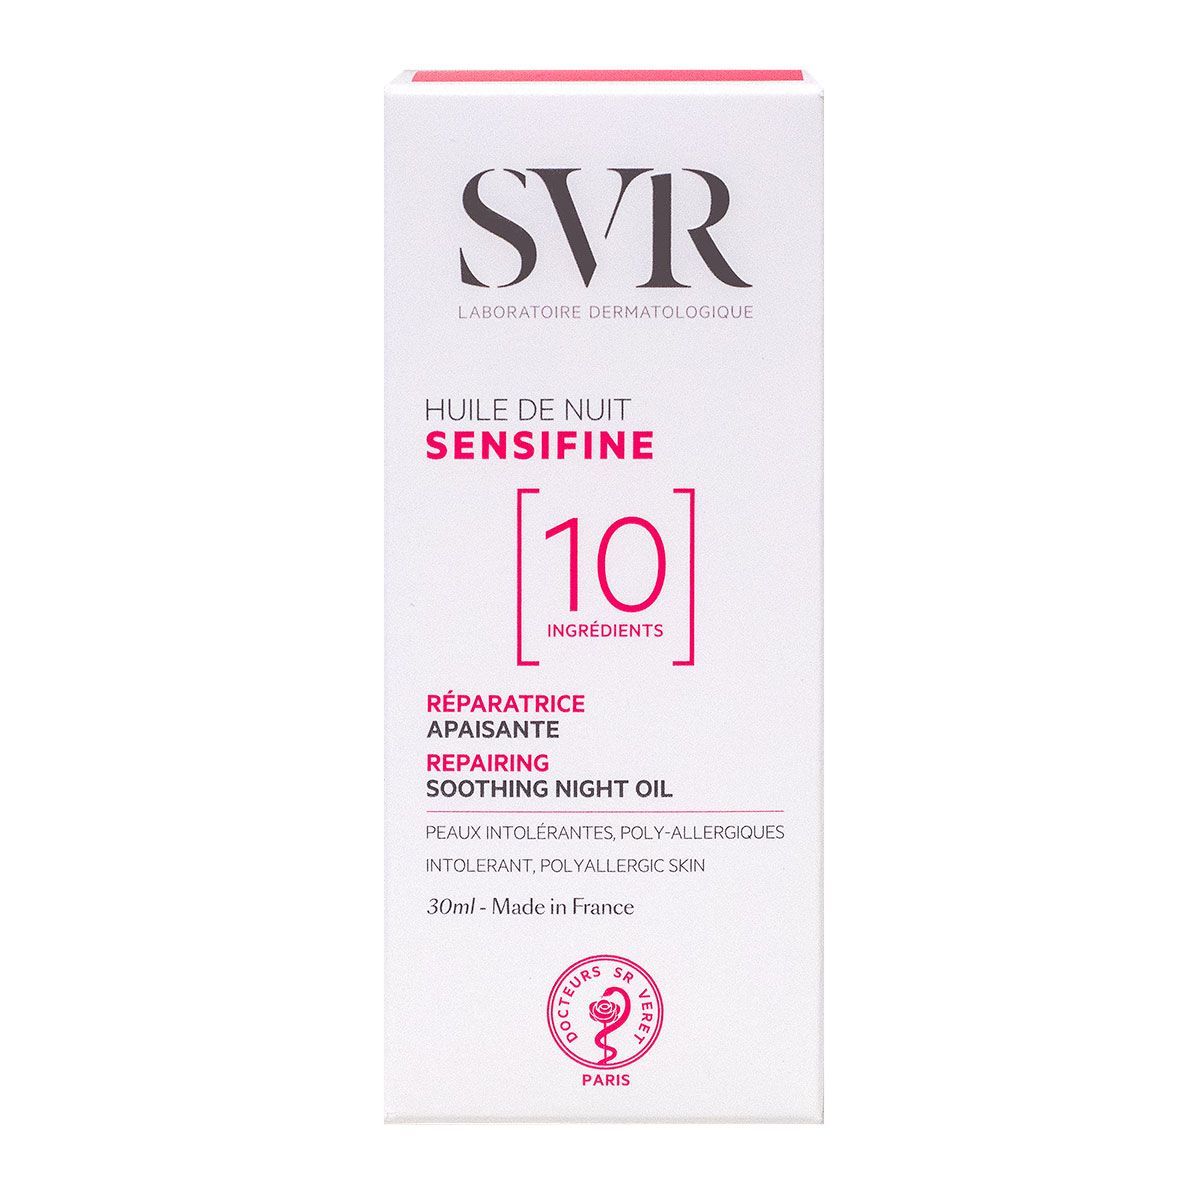 SVR Sensifine 10 ingrédients huile de nuit 30ml est une huile